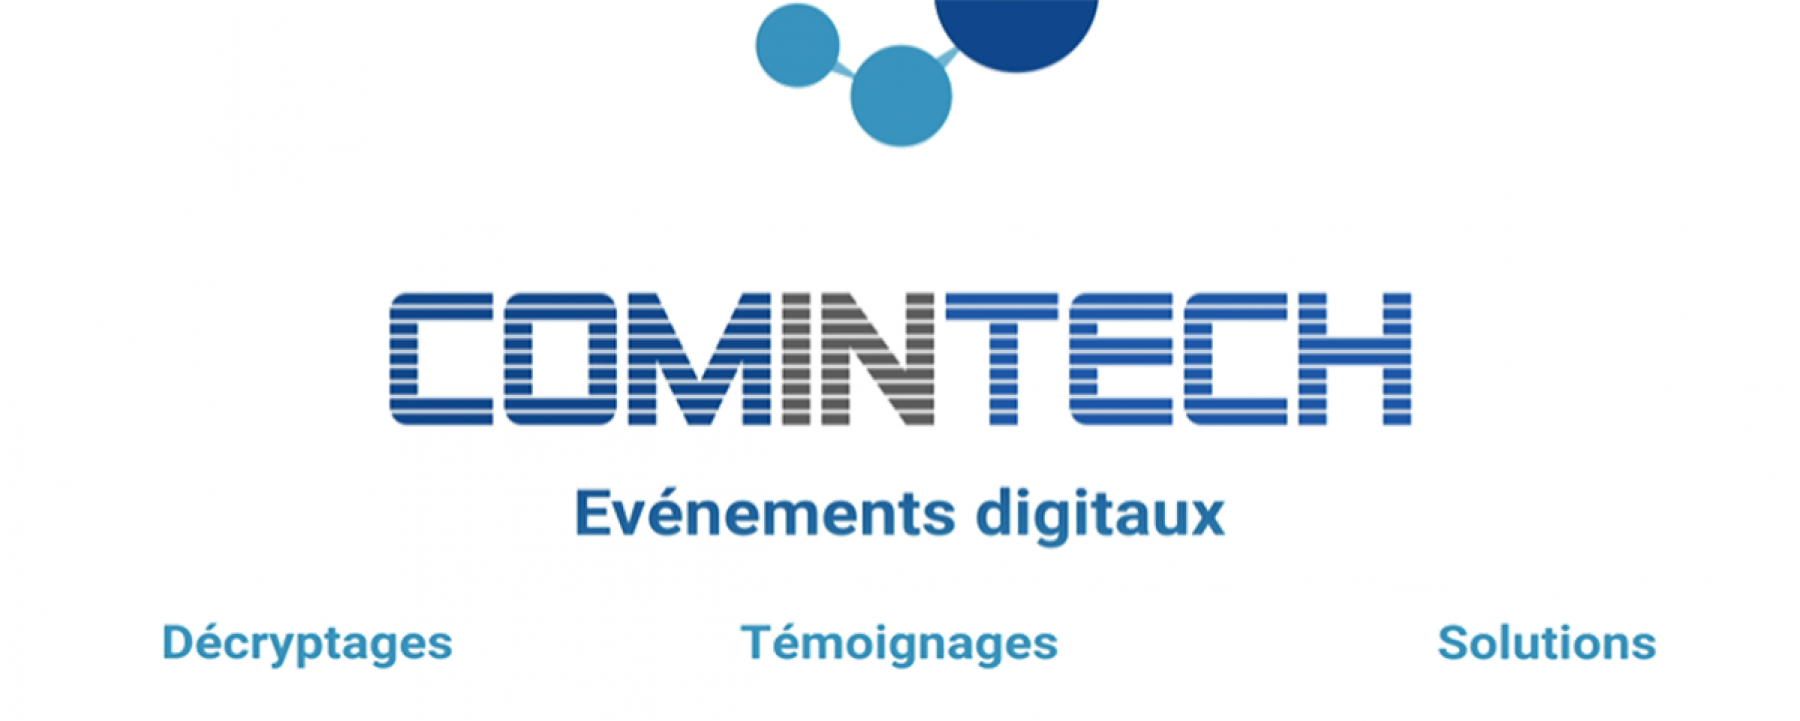 ComInTech 2021, organisé par MPI France Suisse